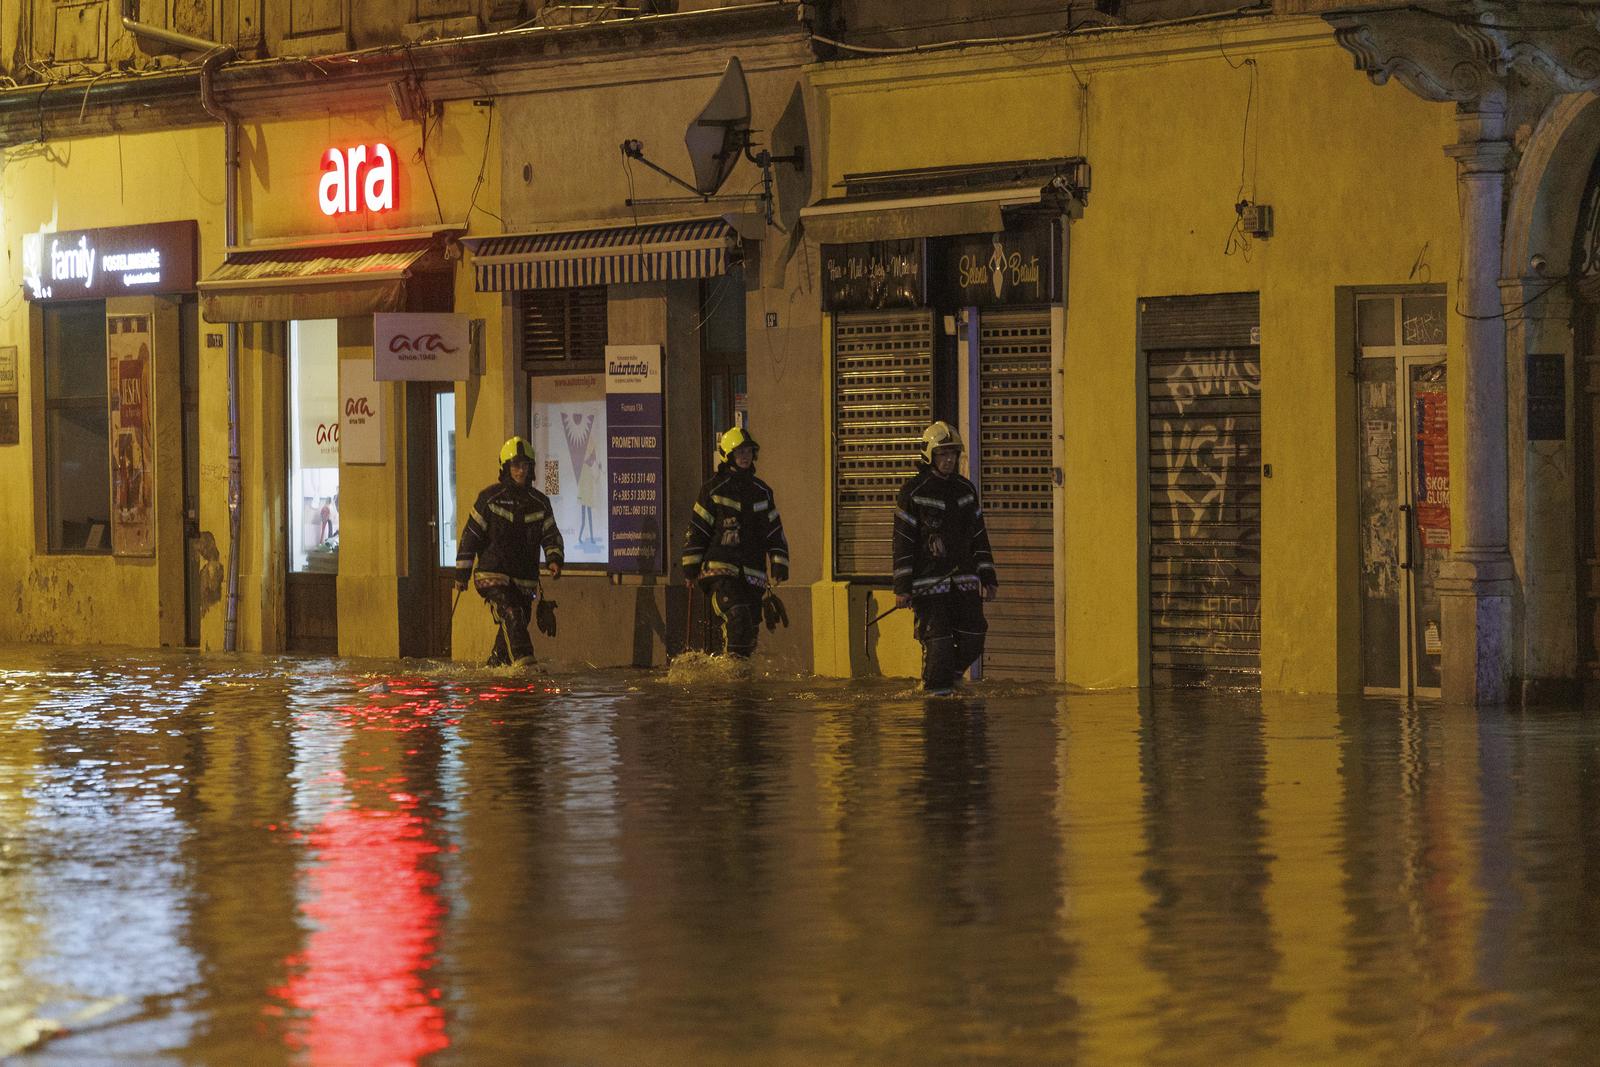 28.09.2022., Rijeka -  Zbog obilne kise poplavila je ulica Fiumara. Neki automobilo ostali su zarobljeni u vodi, vatrogasci i policija na terenu.
 Photo: Nel Pavletic/PIXSELL